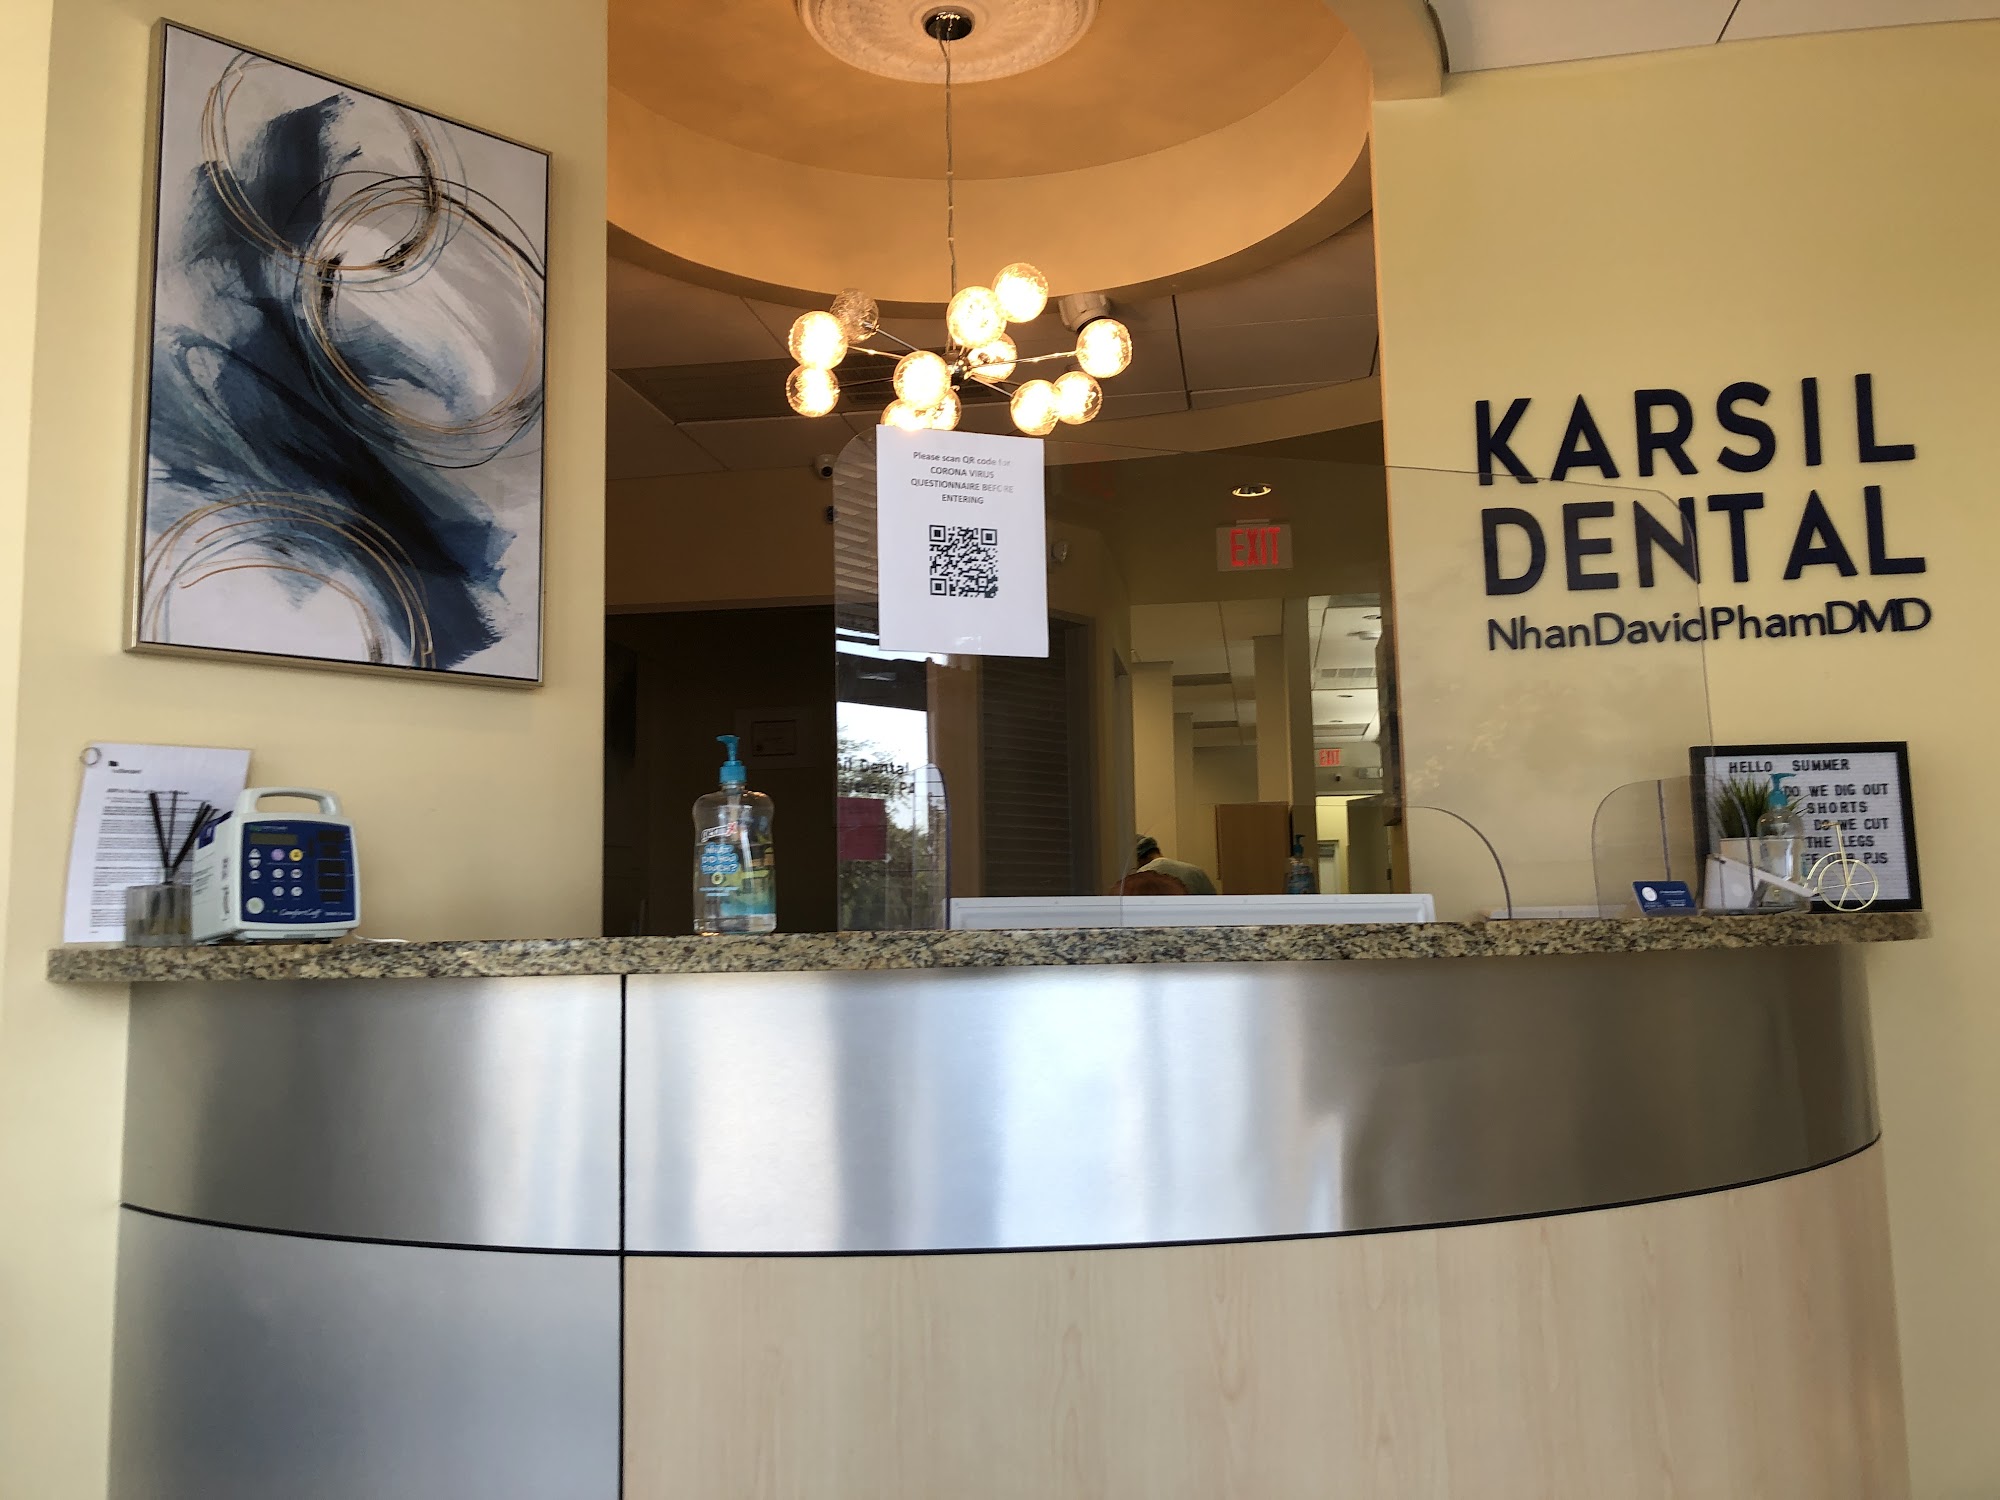 KarSil Dental